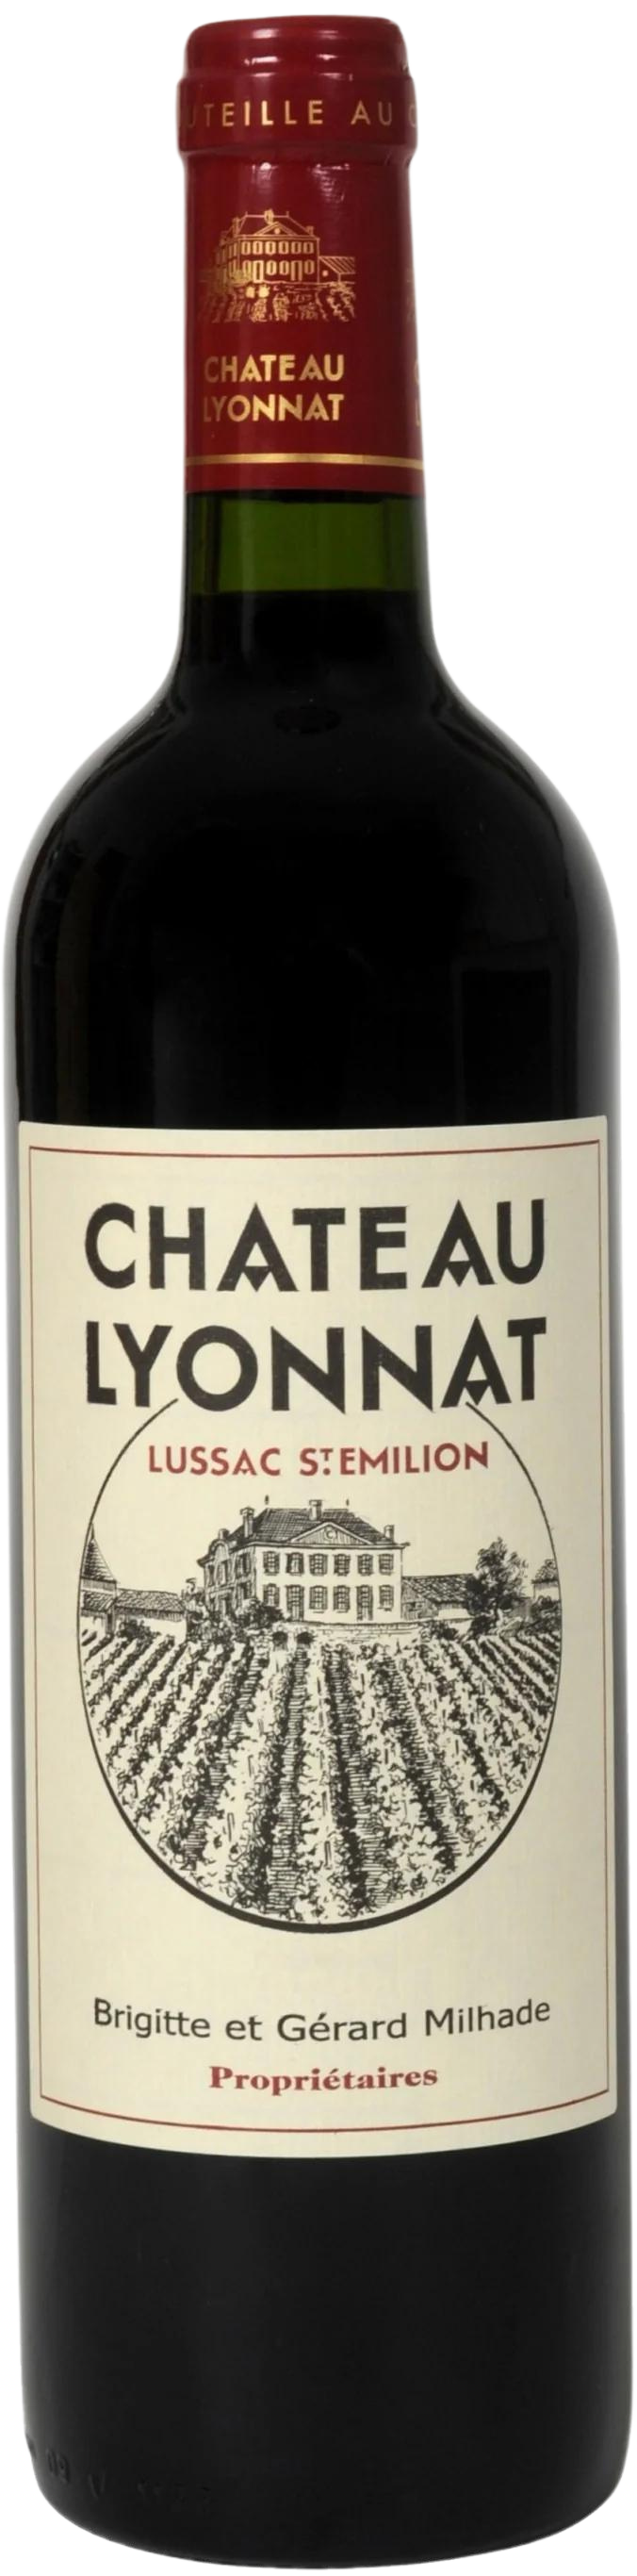 Chteau Lyonnat - Lussac-St.-Emilion 2000 (750ml) (750ml)